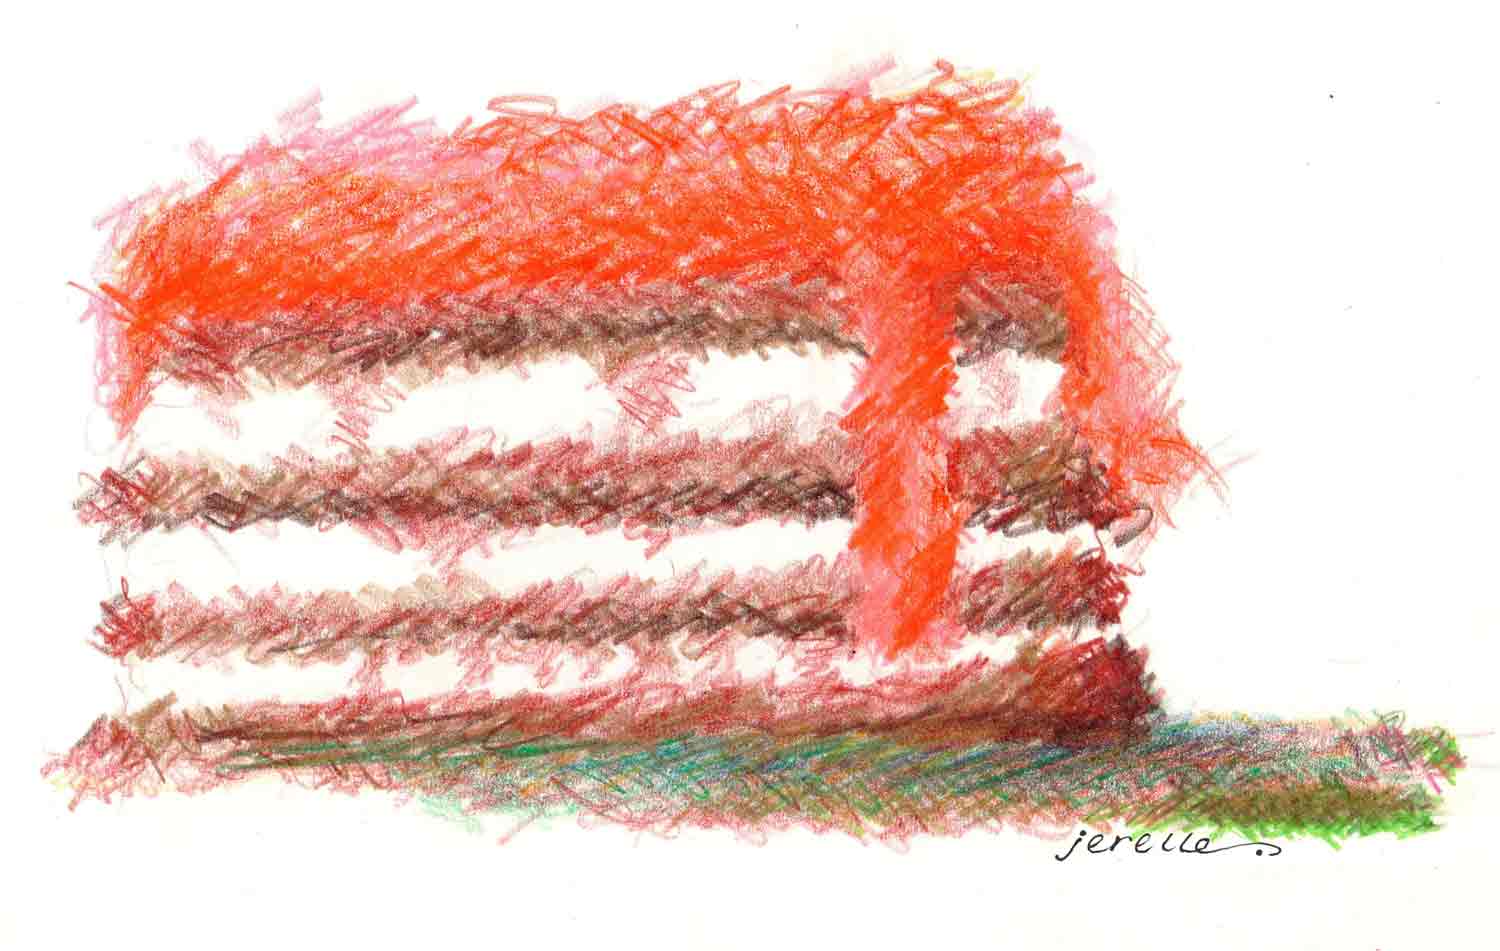 Jerelle-Kraus-Artwork-Pastel-Cake.jpg